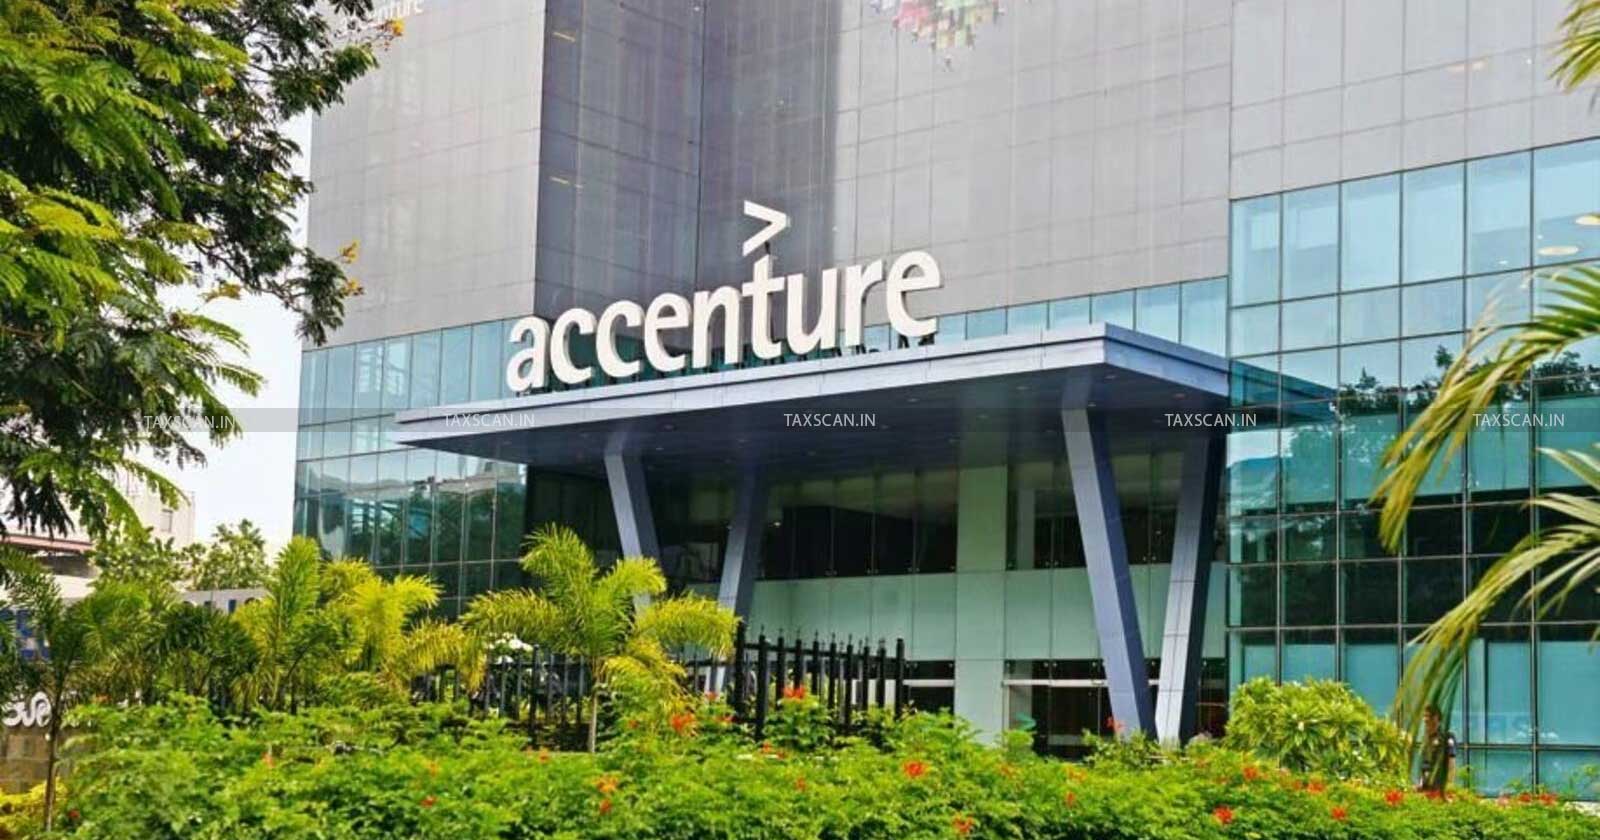 MBA Vacancy in Accenture - CA Vacancy in Accenture - Jobscan - taxscan